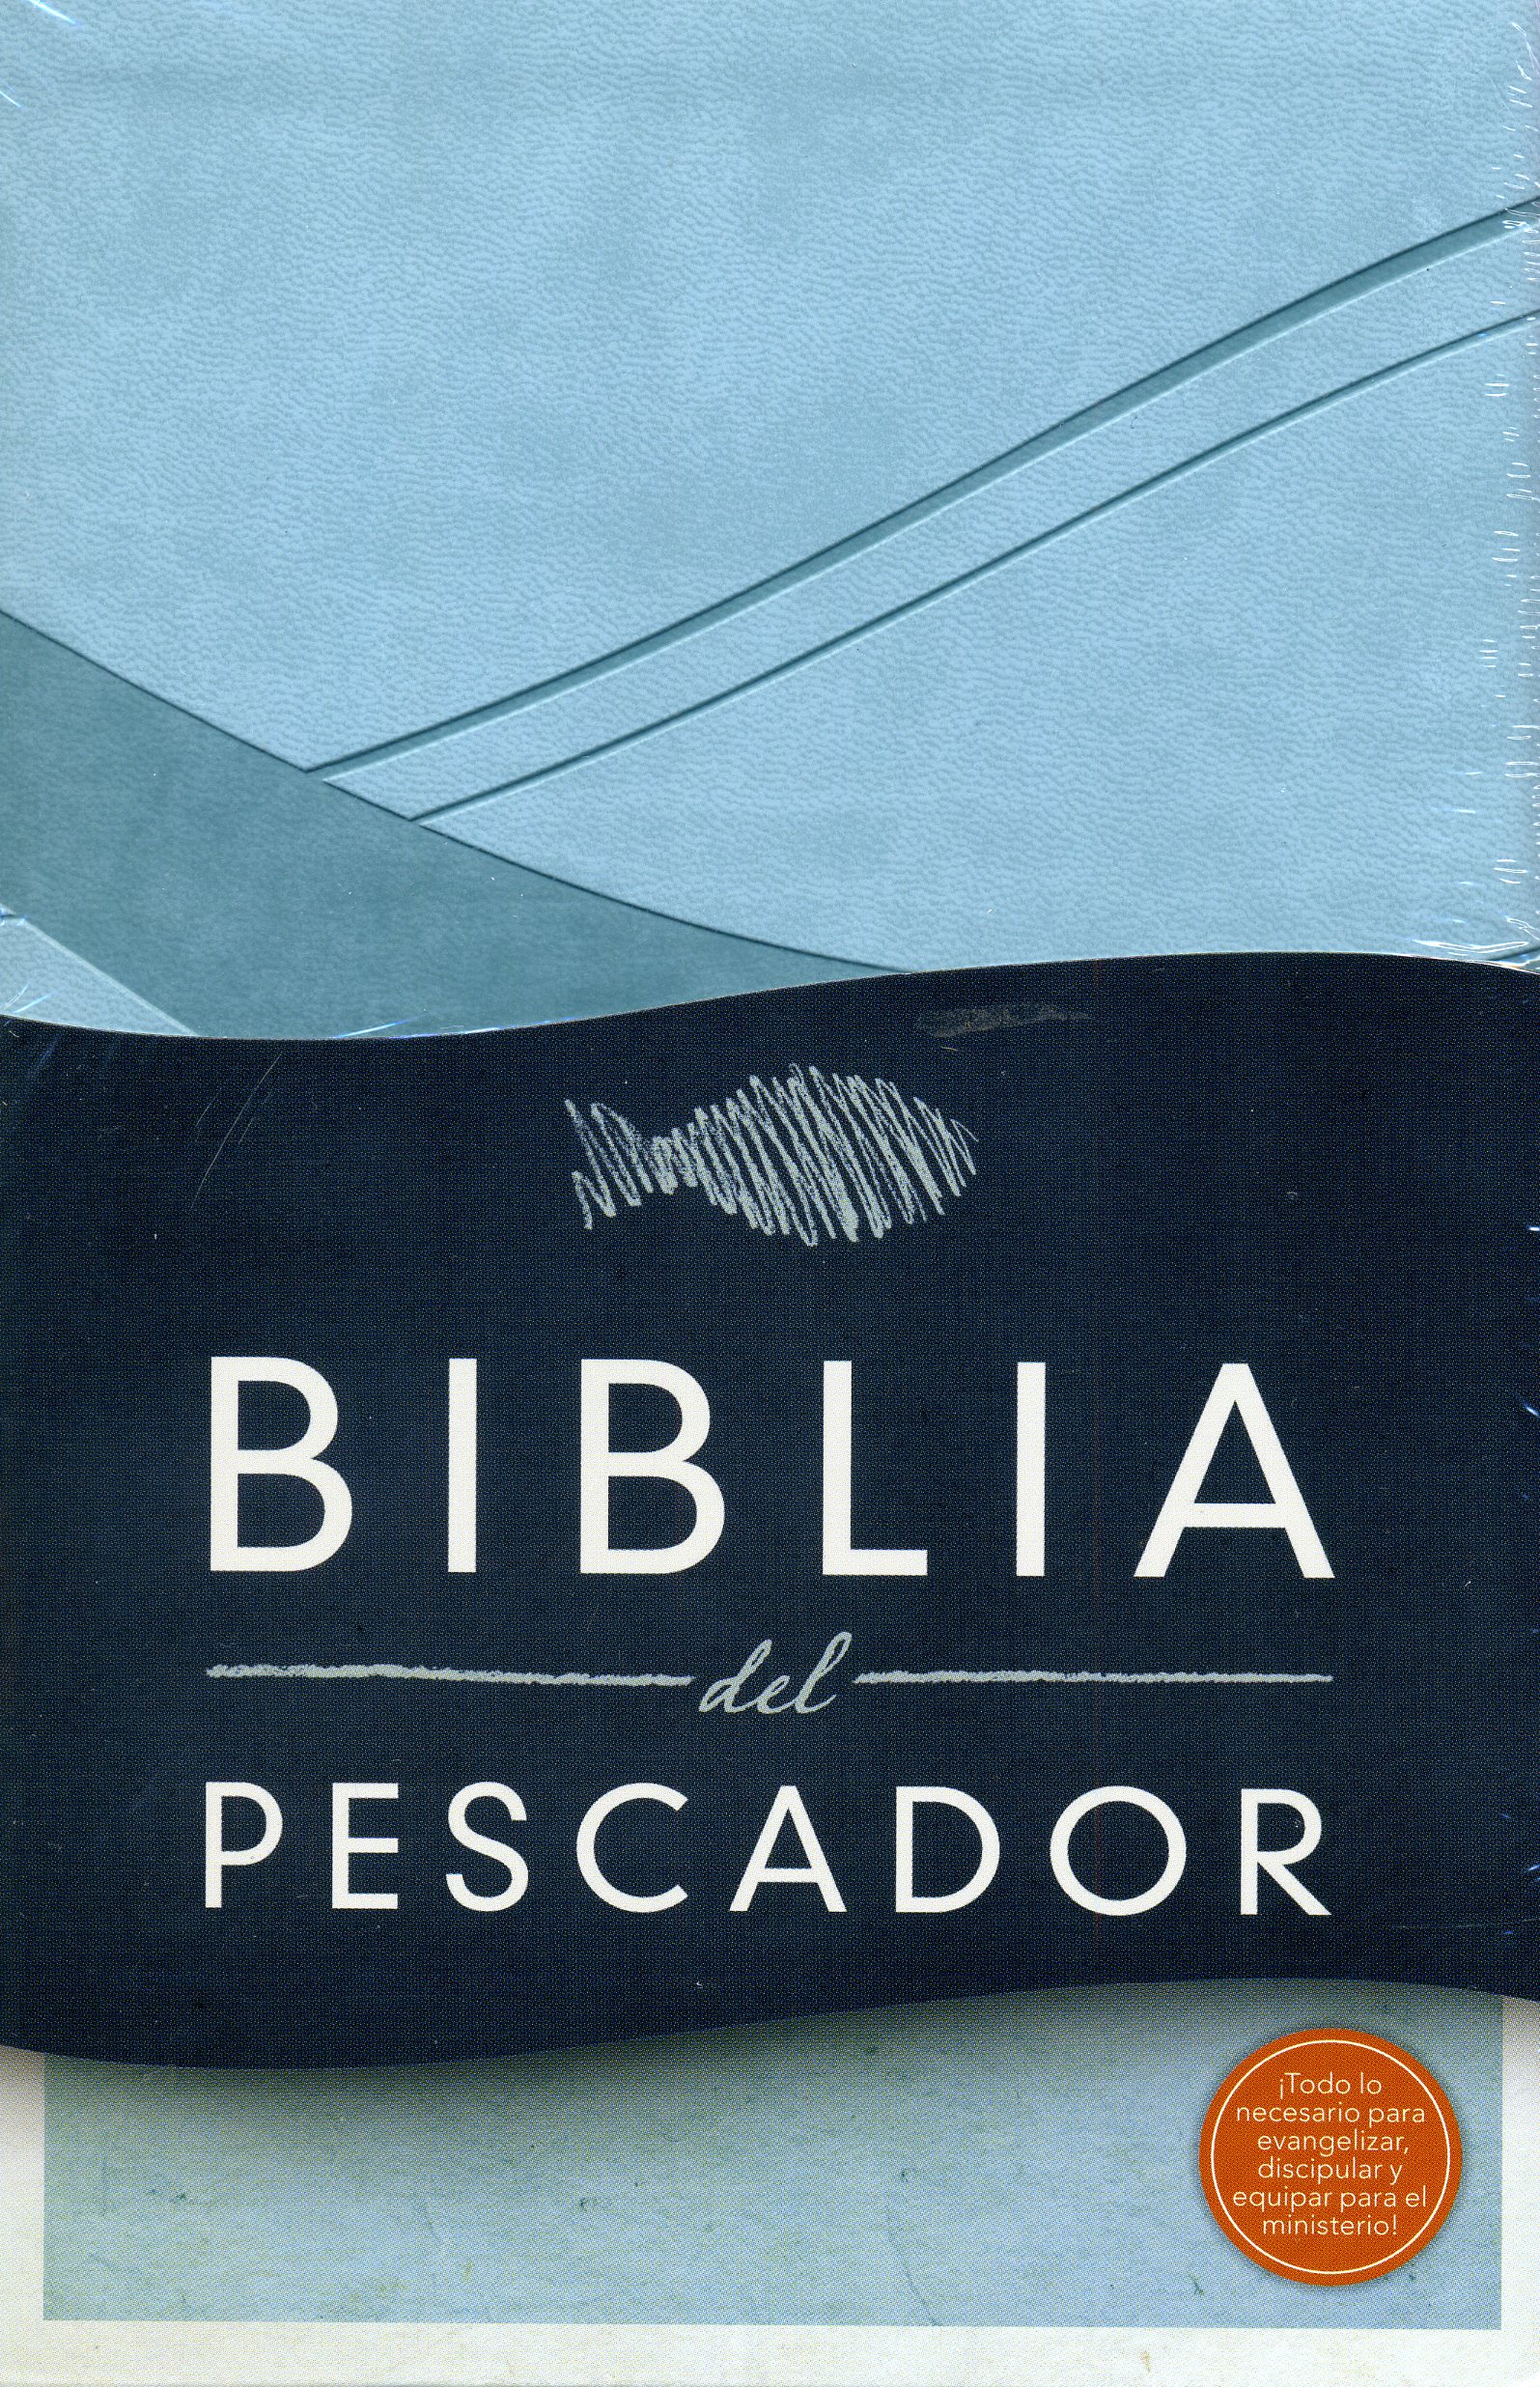 Biblia del pescador - Azul cobalto